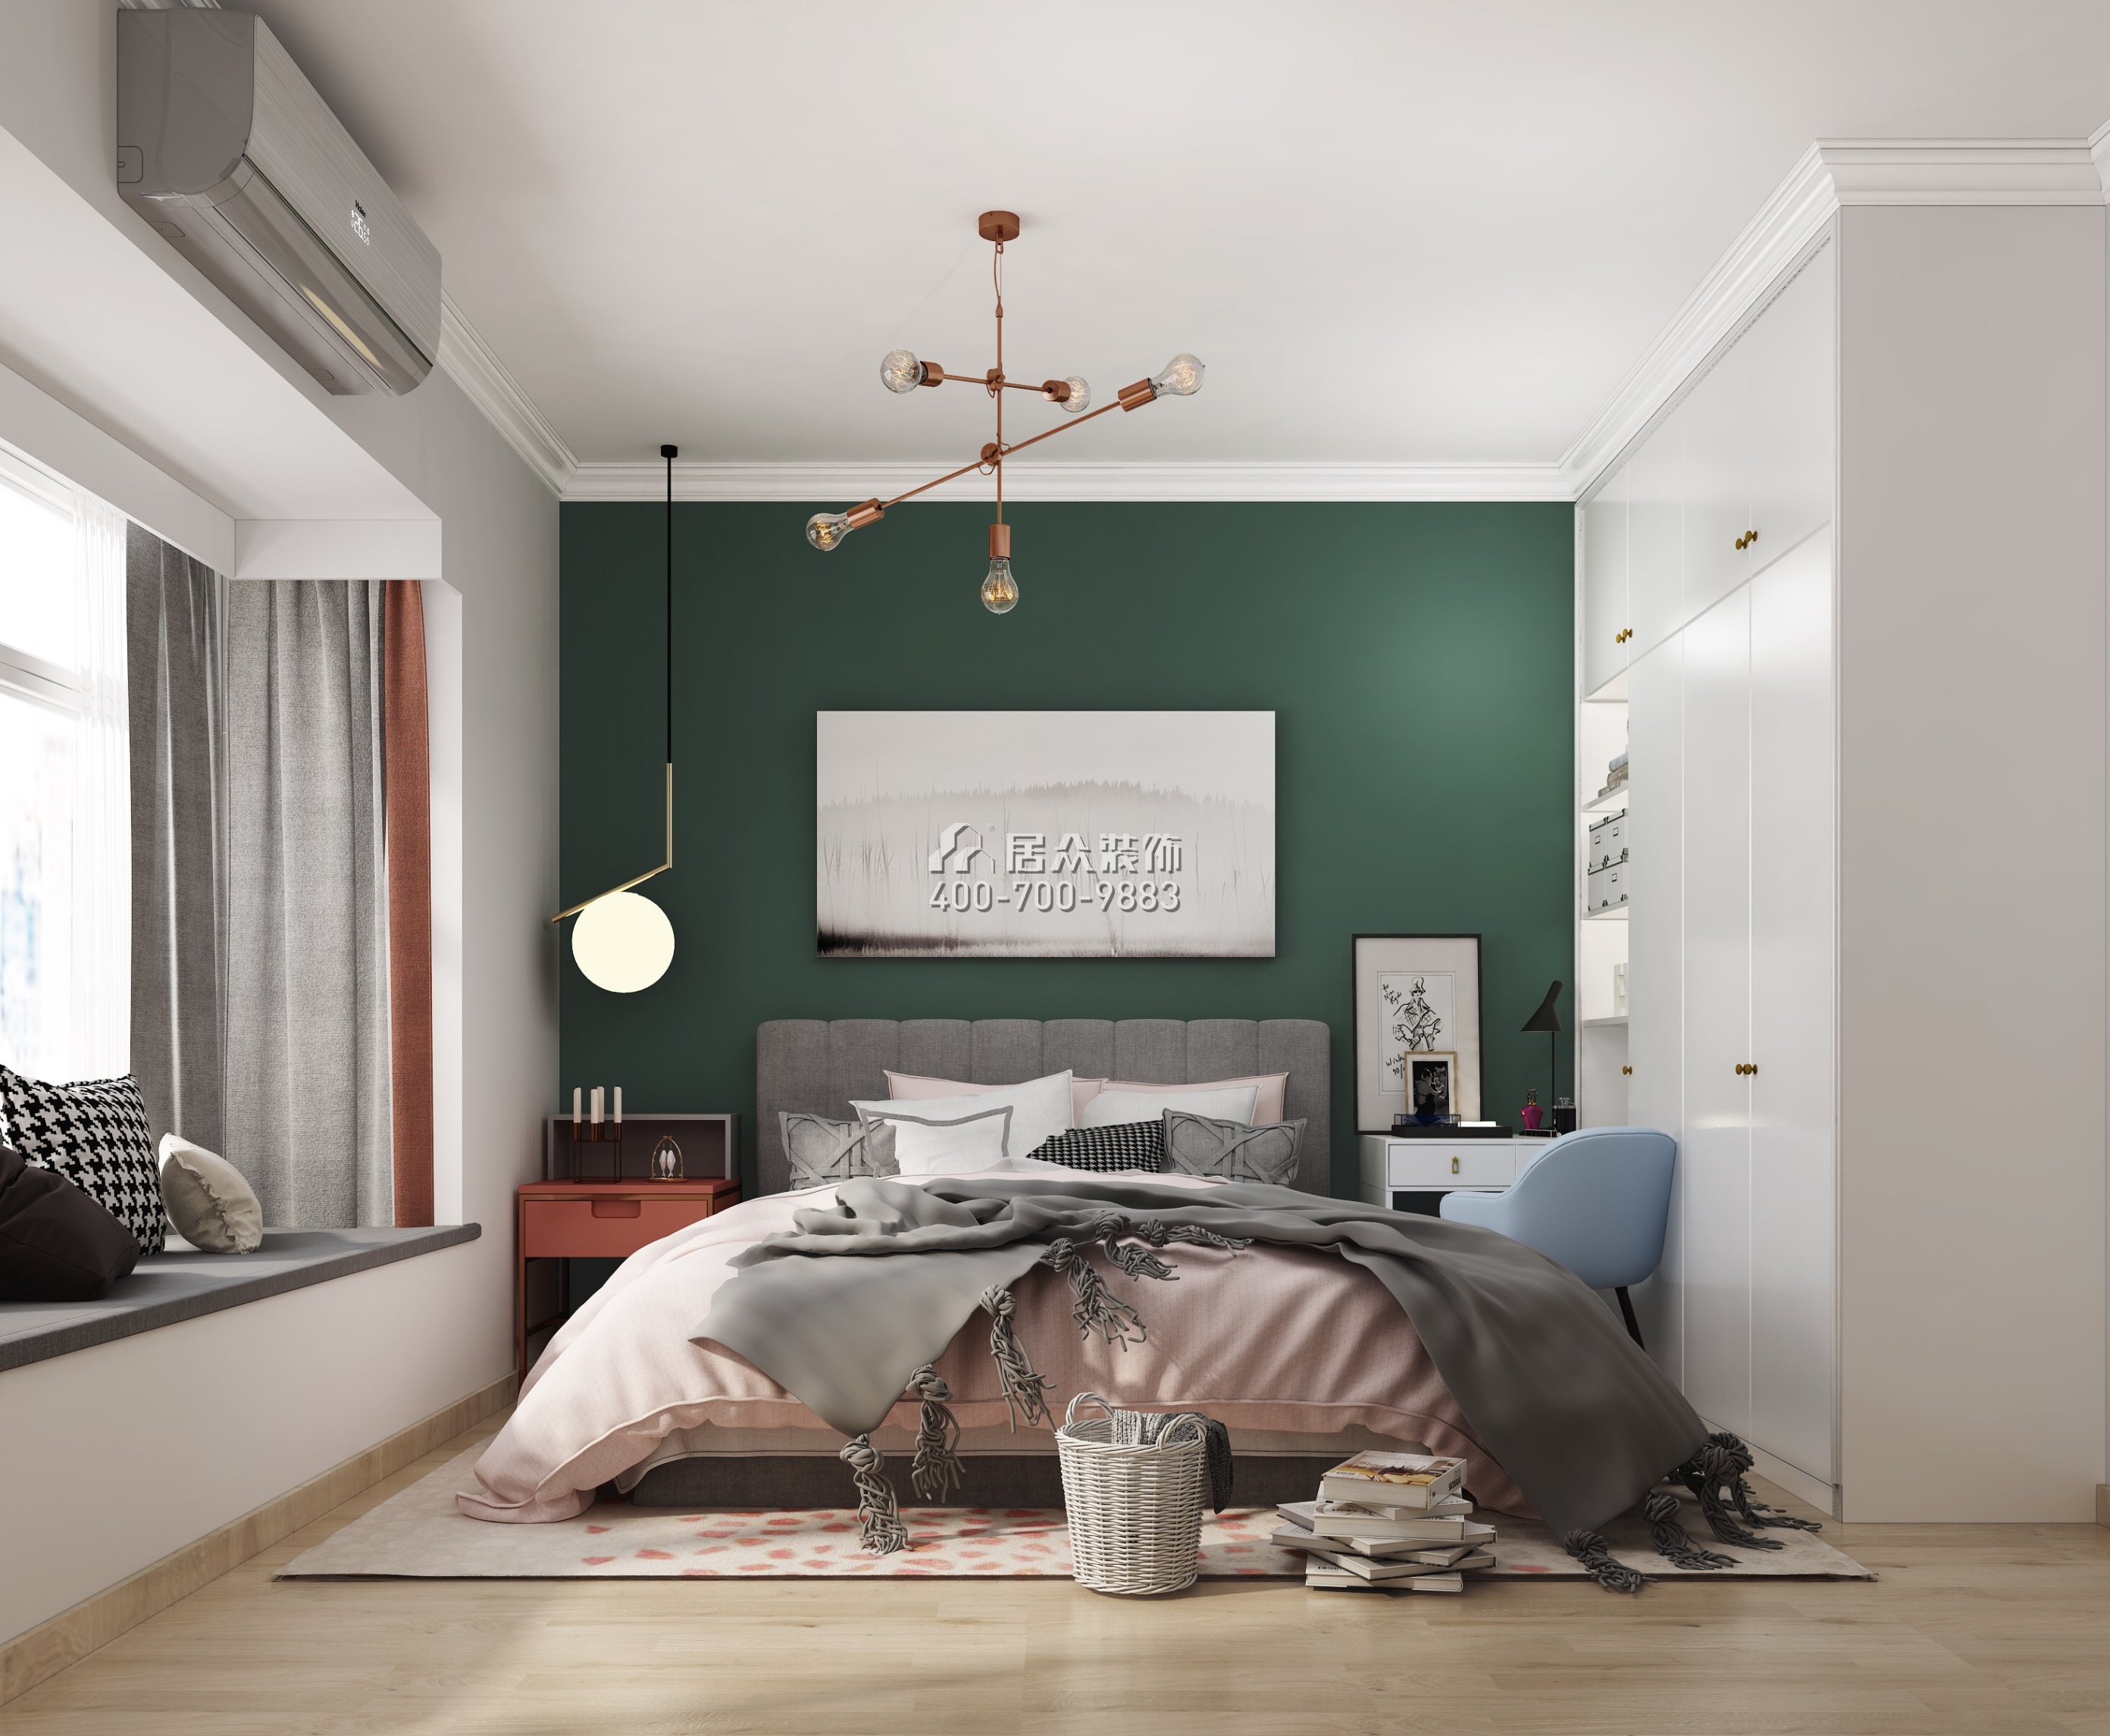 传麒尚林82平方米现代简约风格平层户型卧室装修效果图